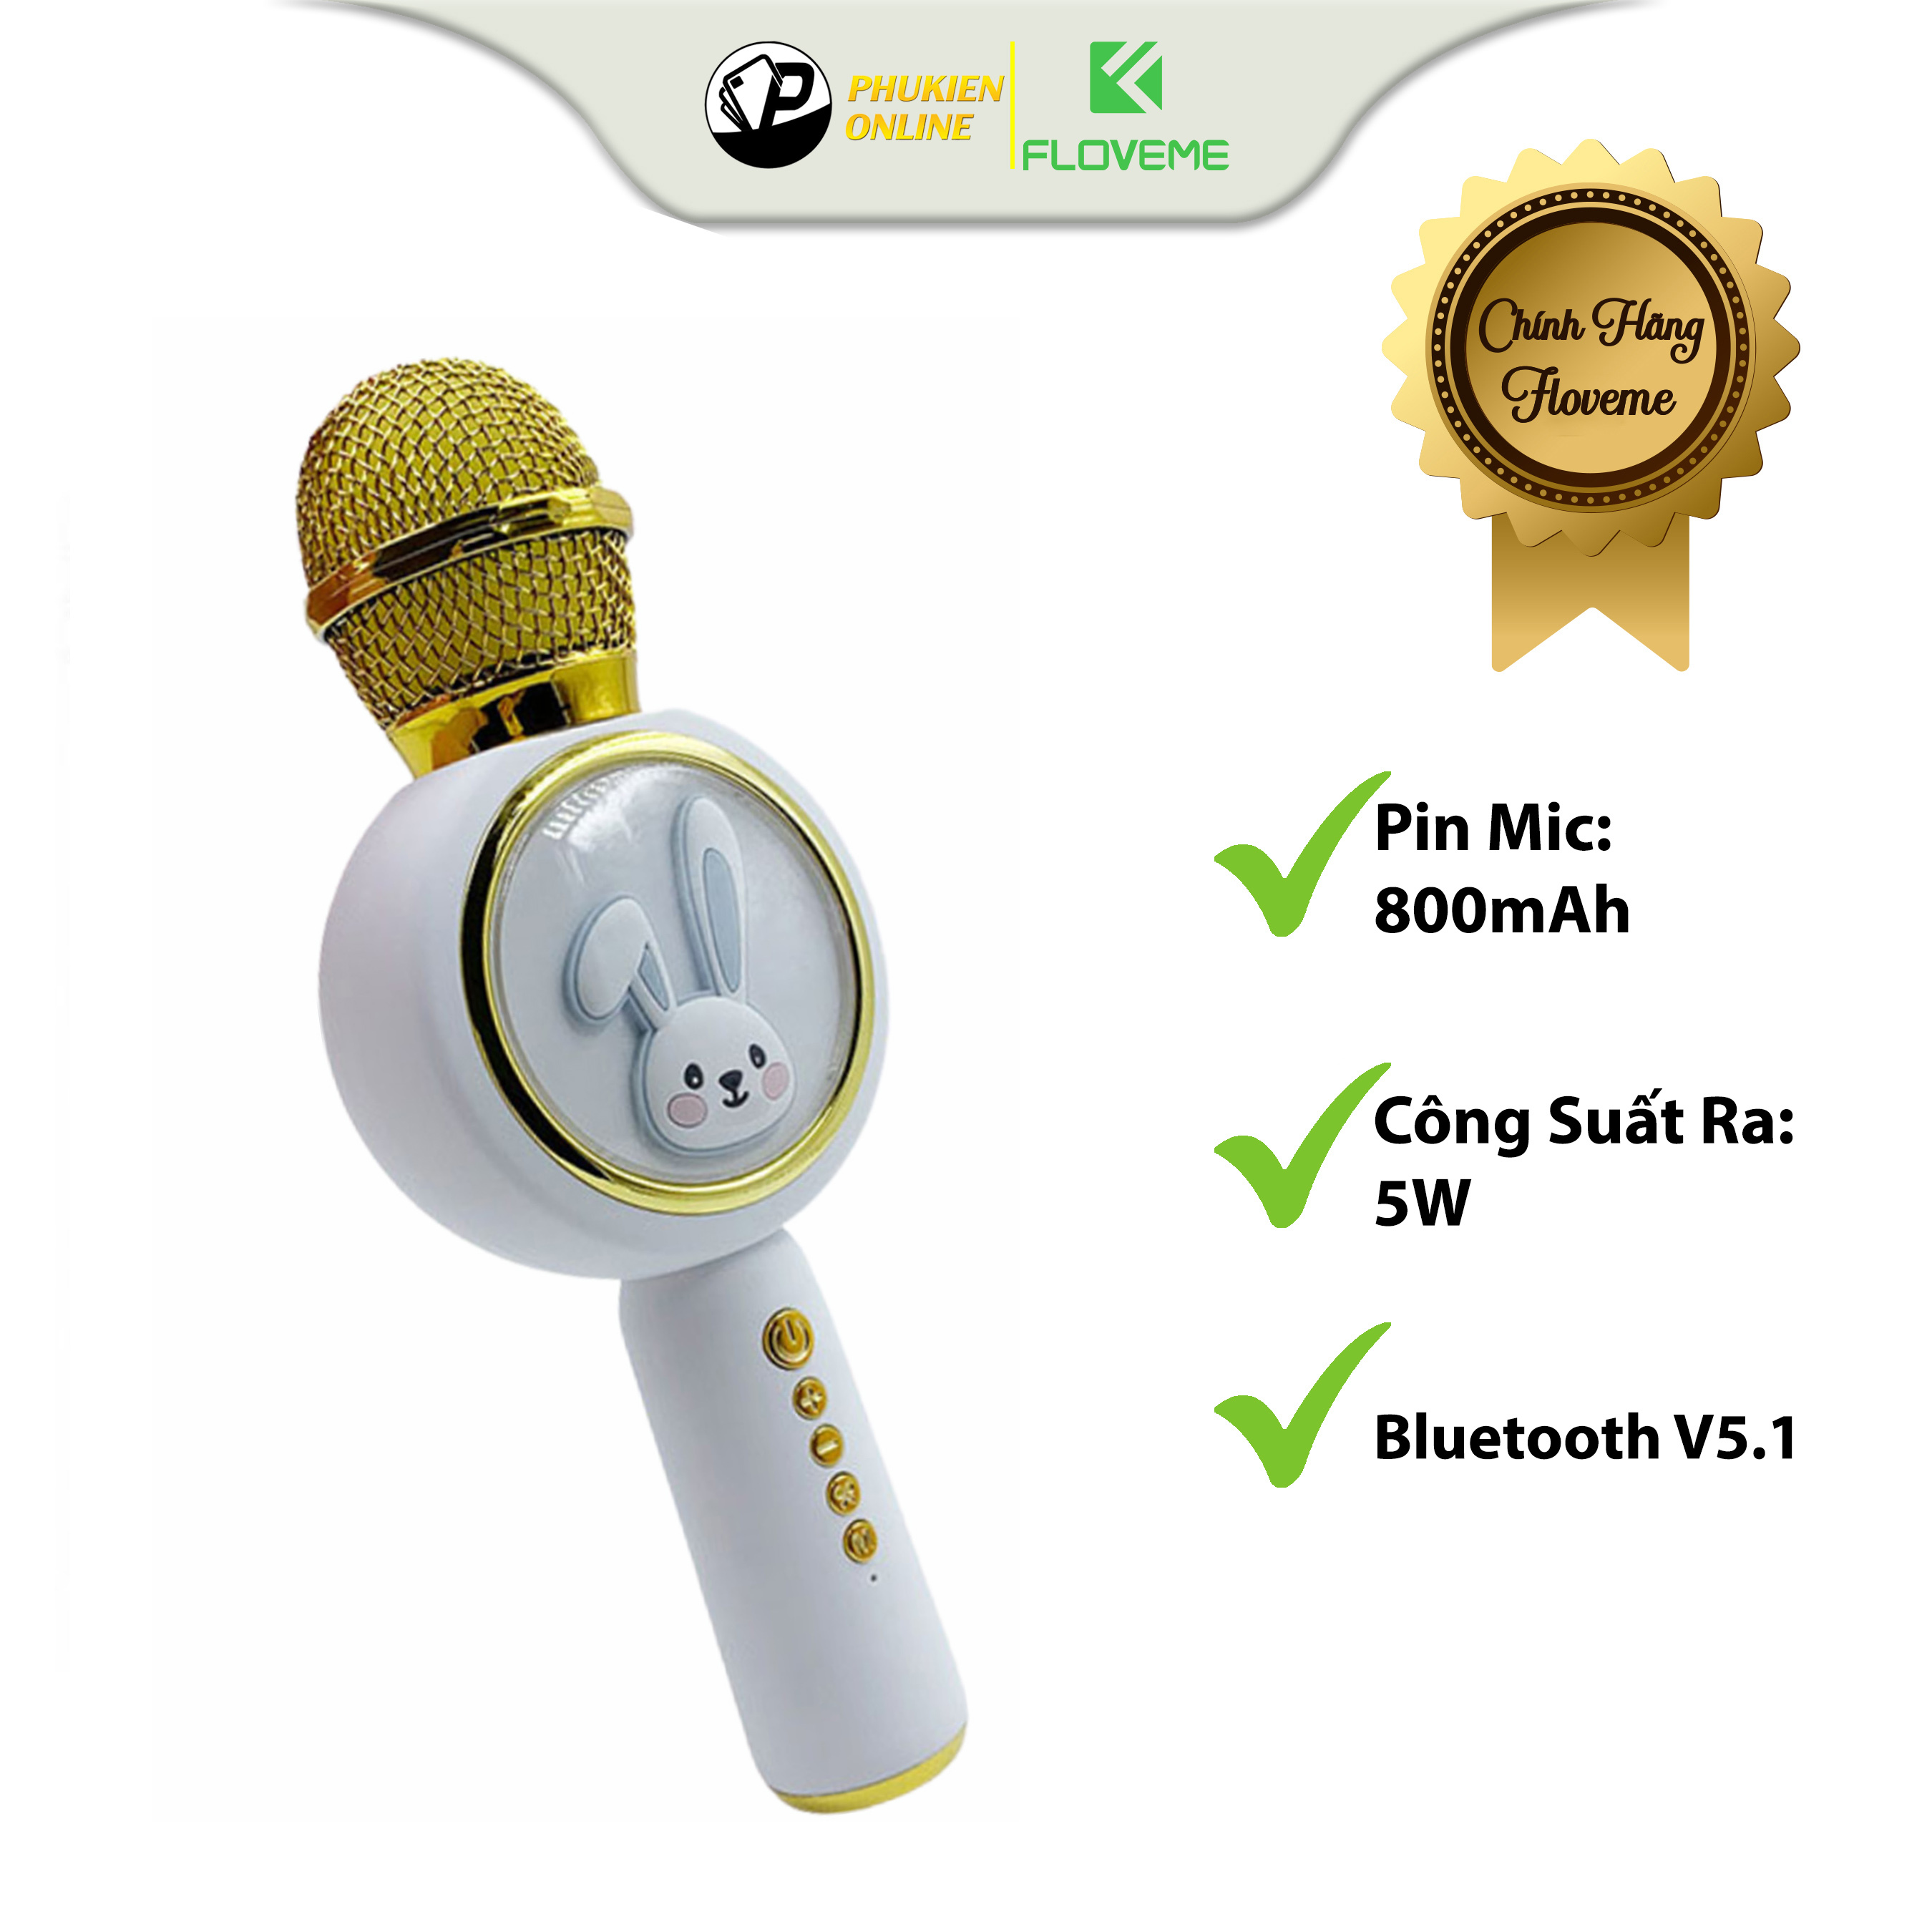 Micro Karaoke Bluetooth Không Dây Kèm Loa Floveme X6 Hình Thỏ Đáng Yêu Âm Thanh Trầm Ấm Hát Hay Bắt Gịong Tốt-Hàng chính hãng